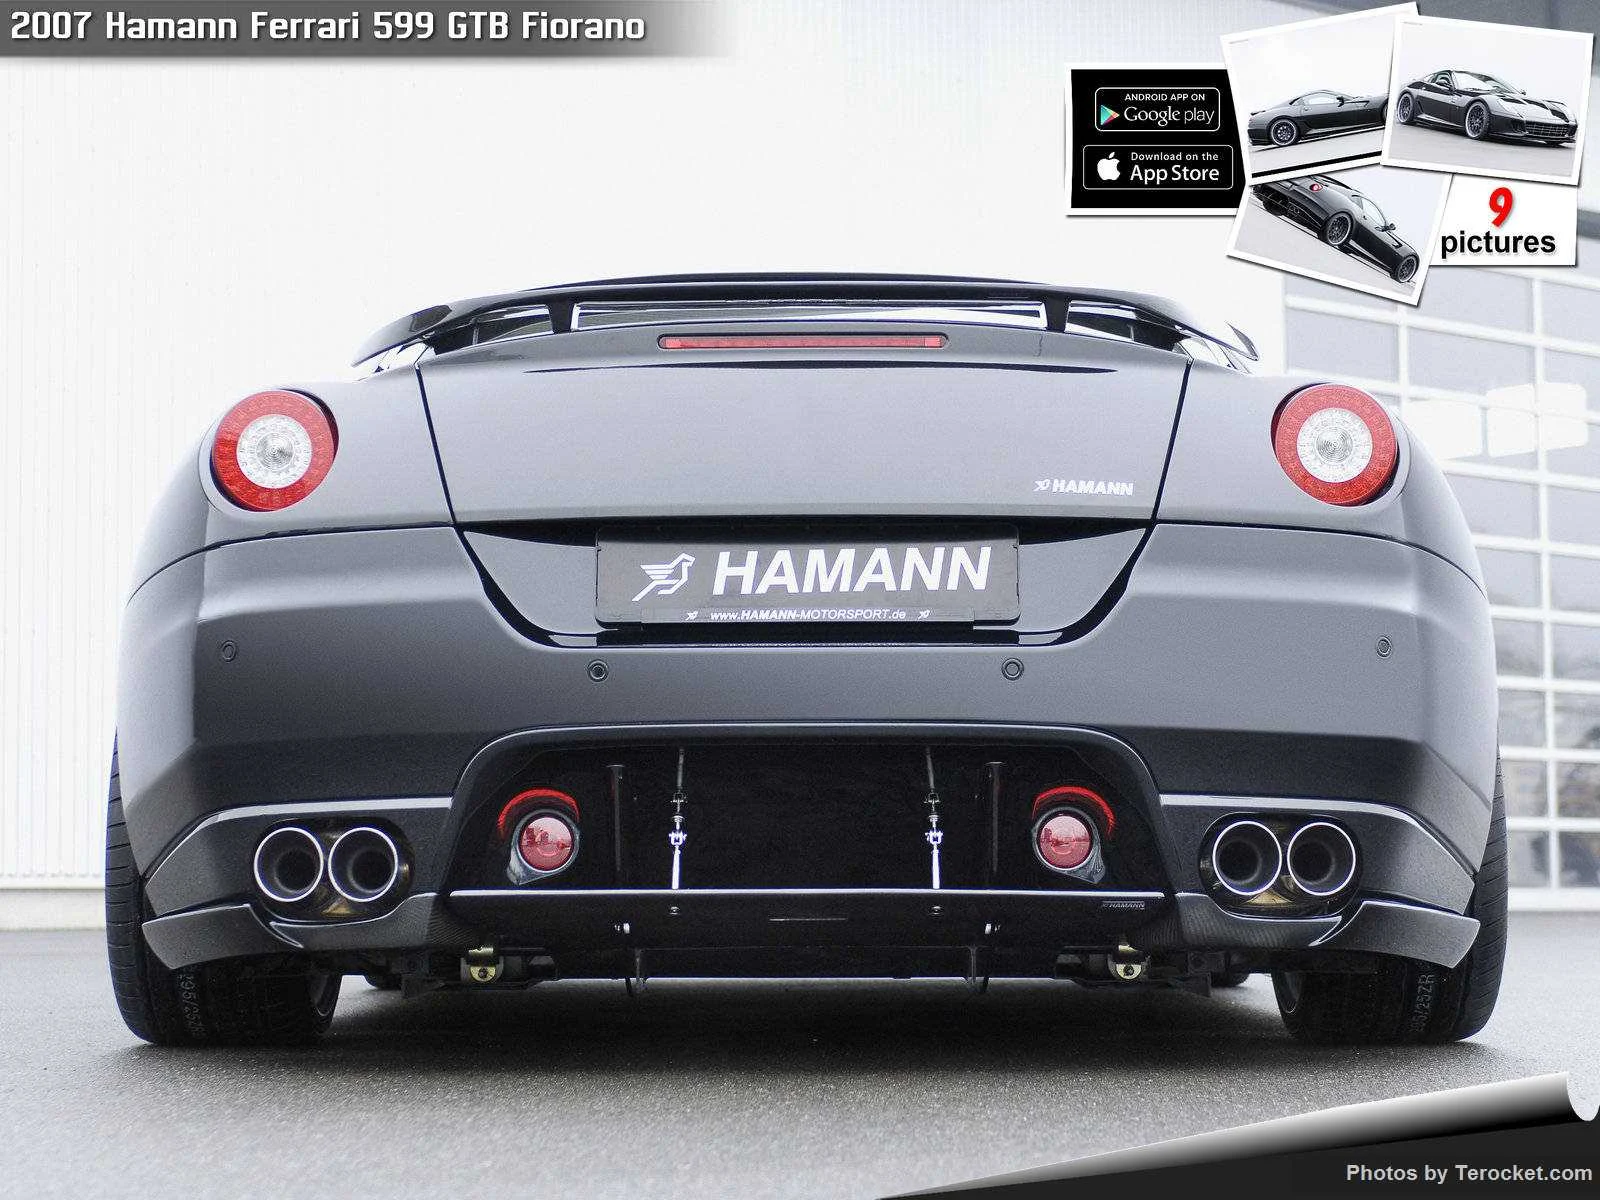 Hình ảnh xe ô tô Hamann Ferrari 599 GTB Fiorano 2007 & nội ngoại thất